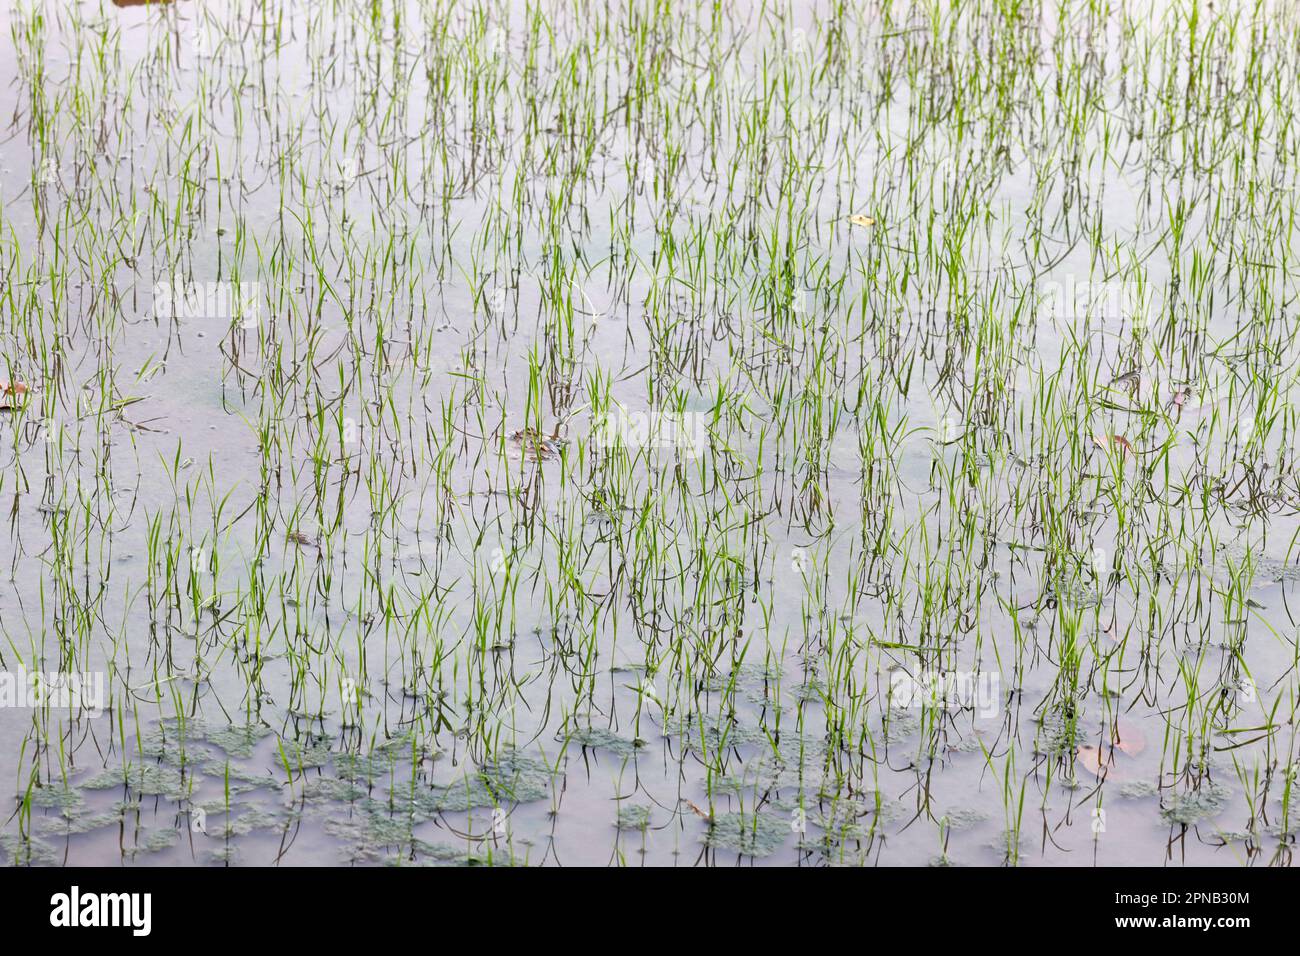 Junge Reispflanzen tauchen gerade in den überfluteten Feldern auf. Tan Chau. Vietnam. Stockfoto